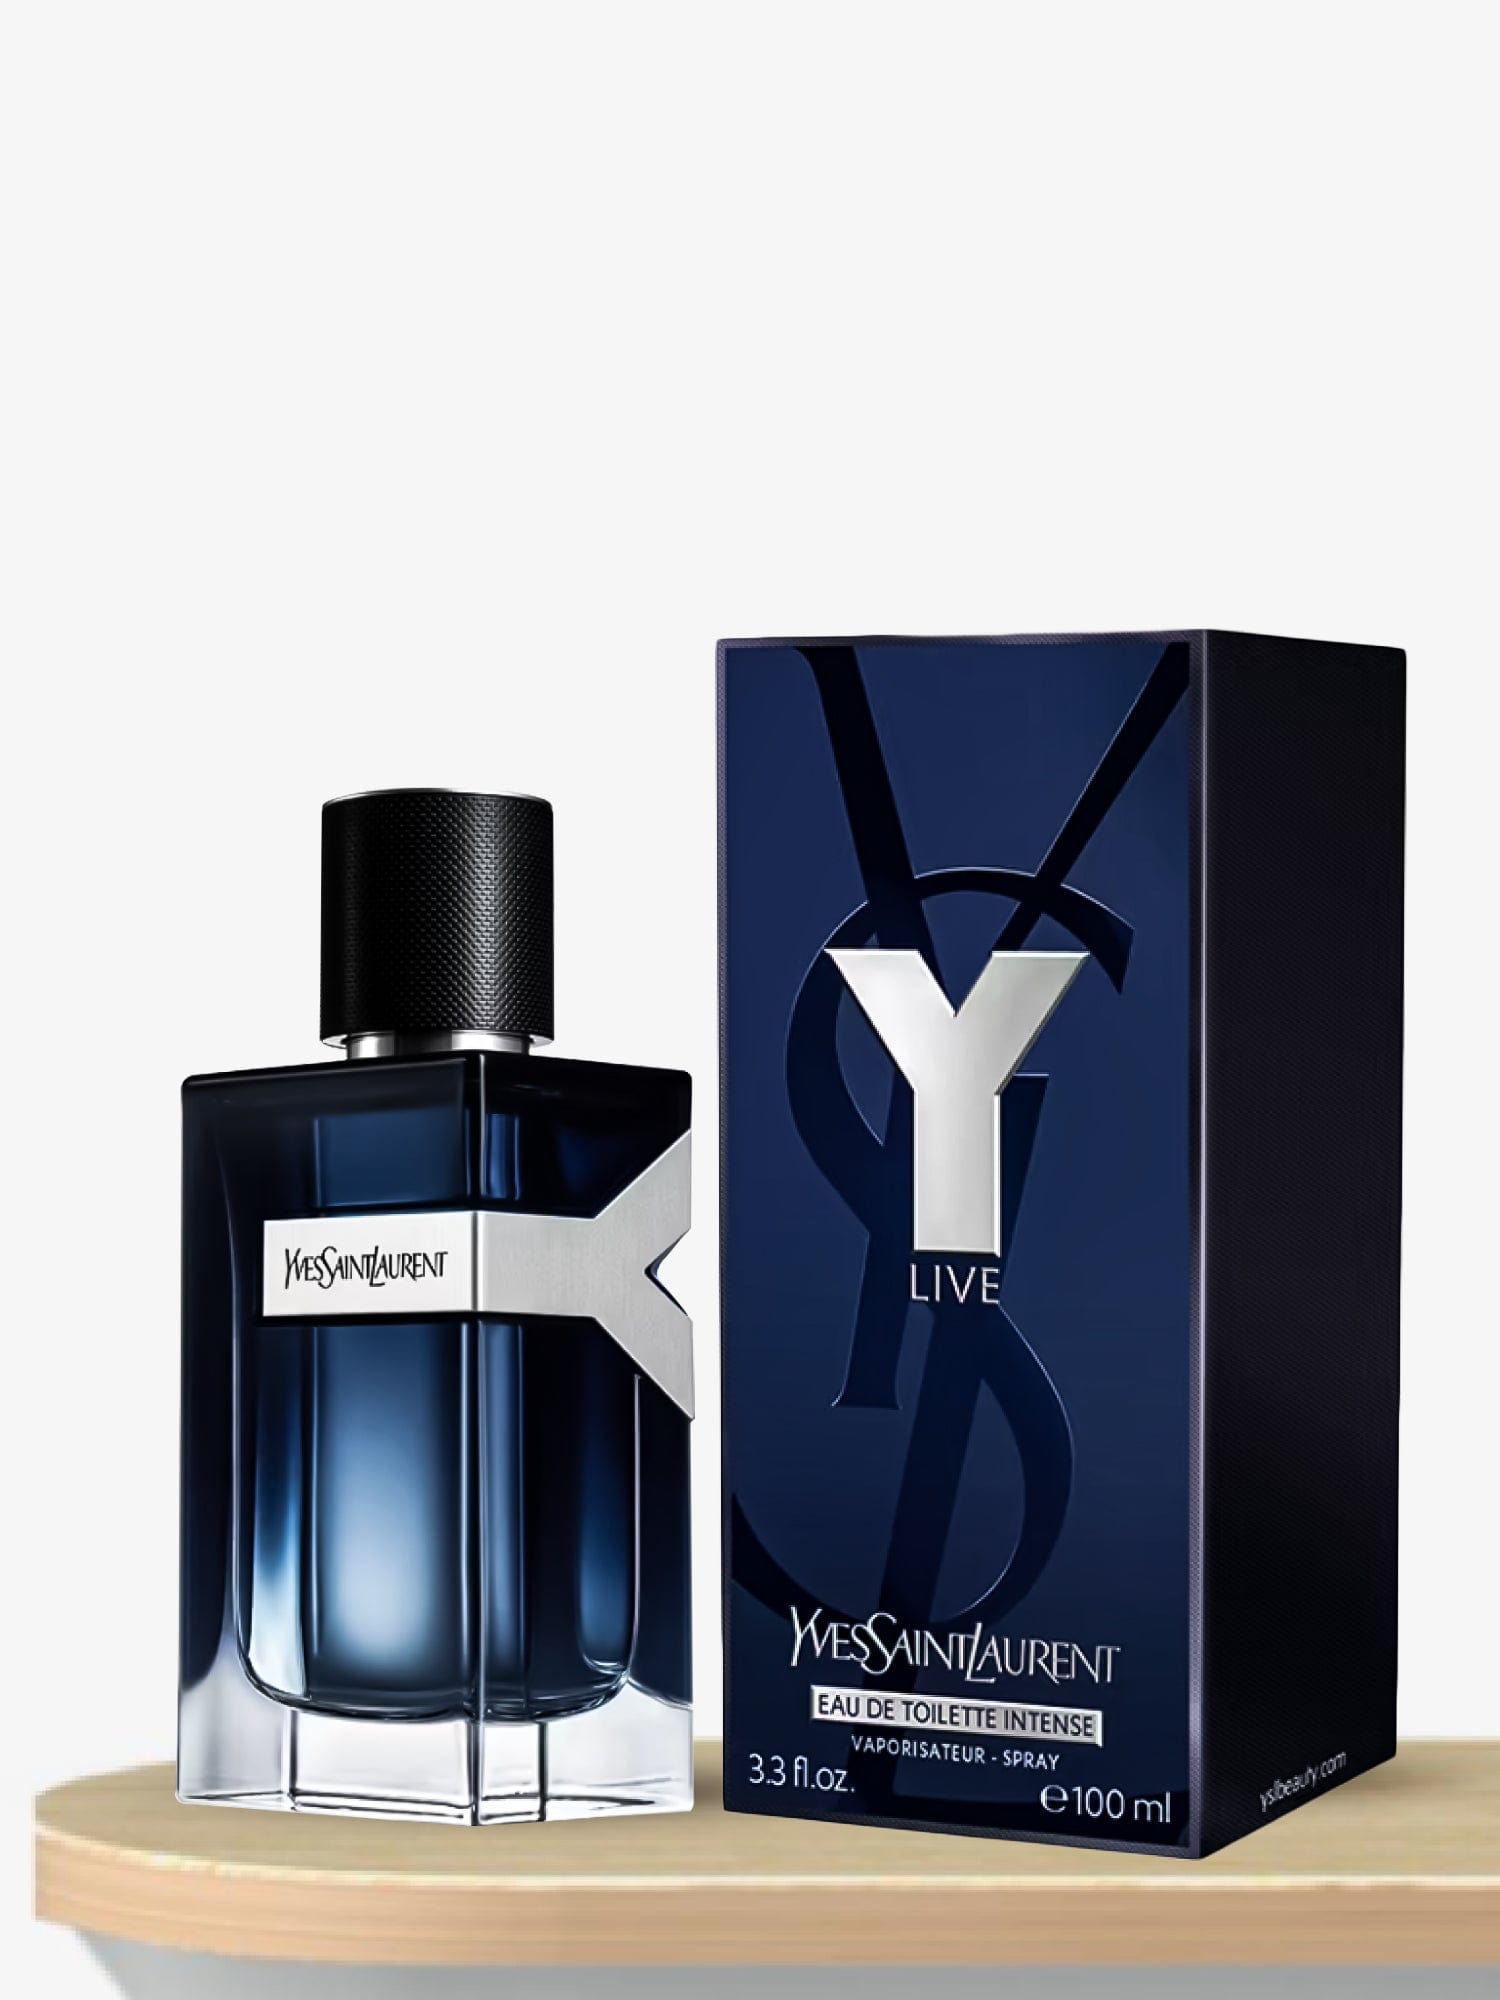 NEW! Yves Saint Laurent Y Eau de Parfum INTENSE Fragrance Review!